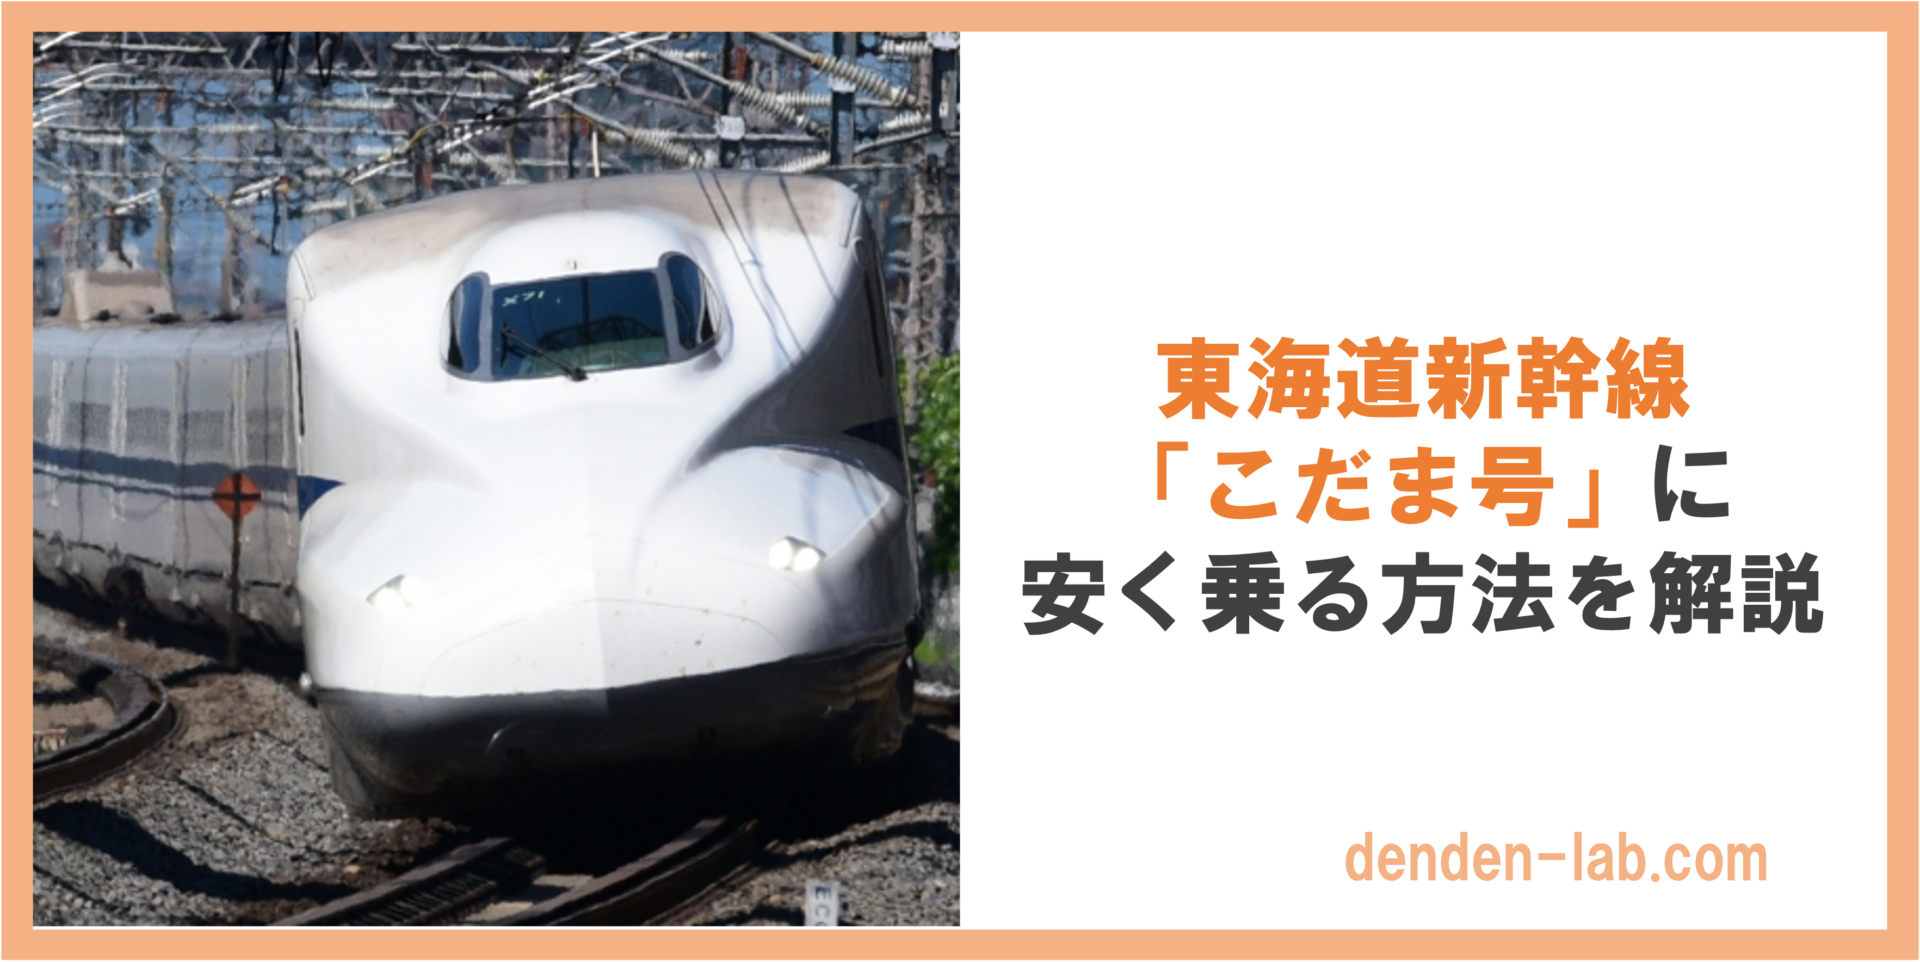 東海道新幹線 「こだま号」に 安く乗る方法を解説